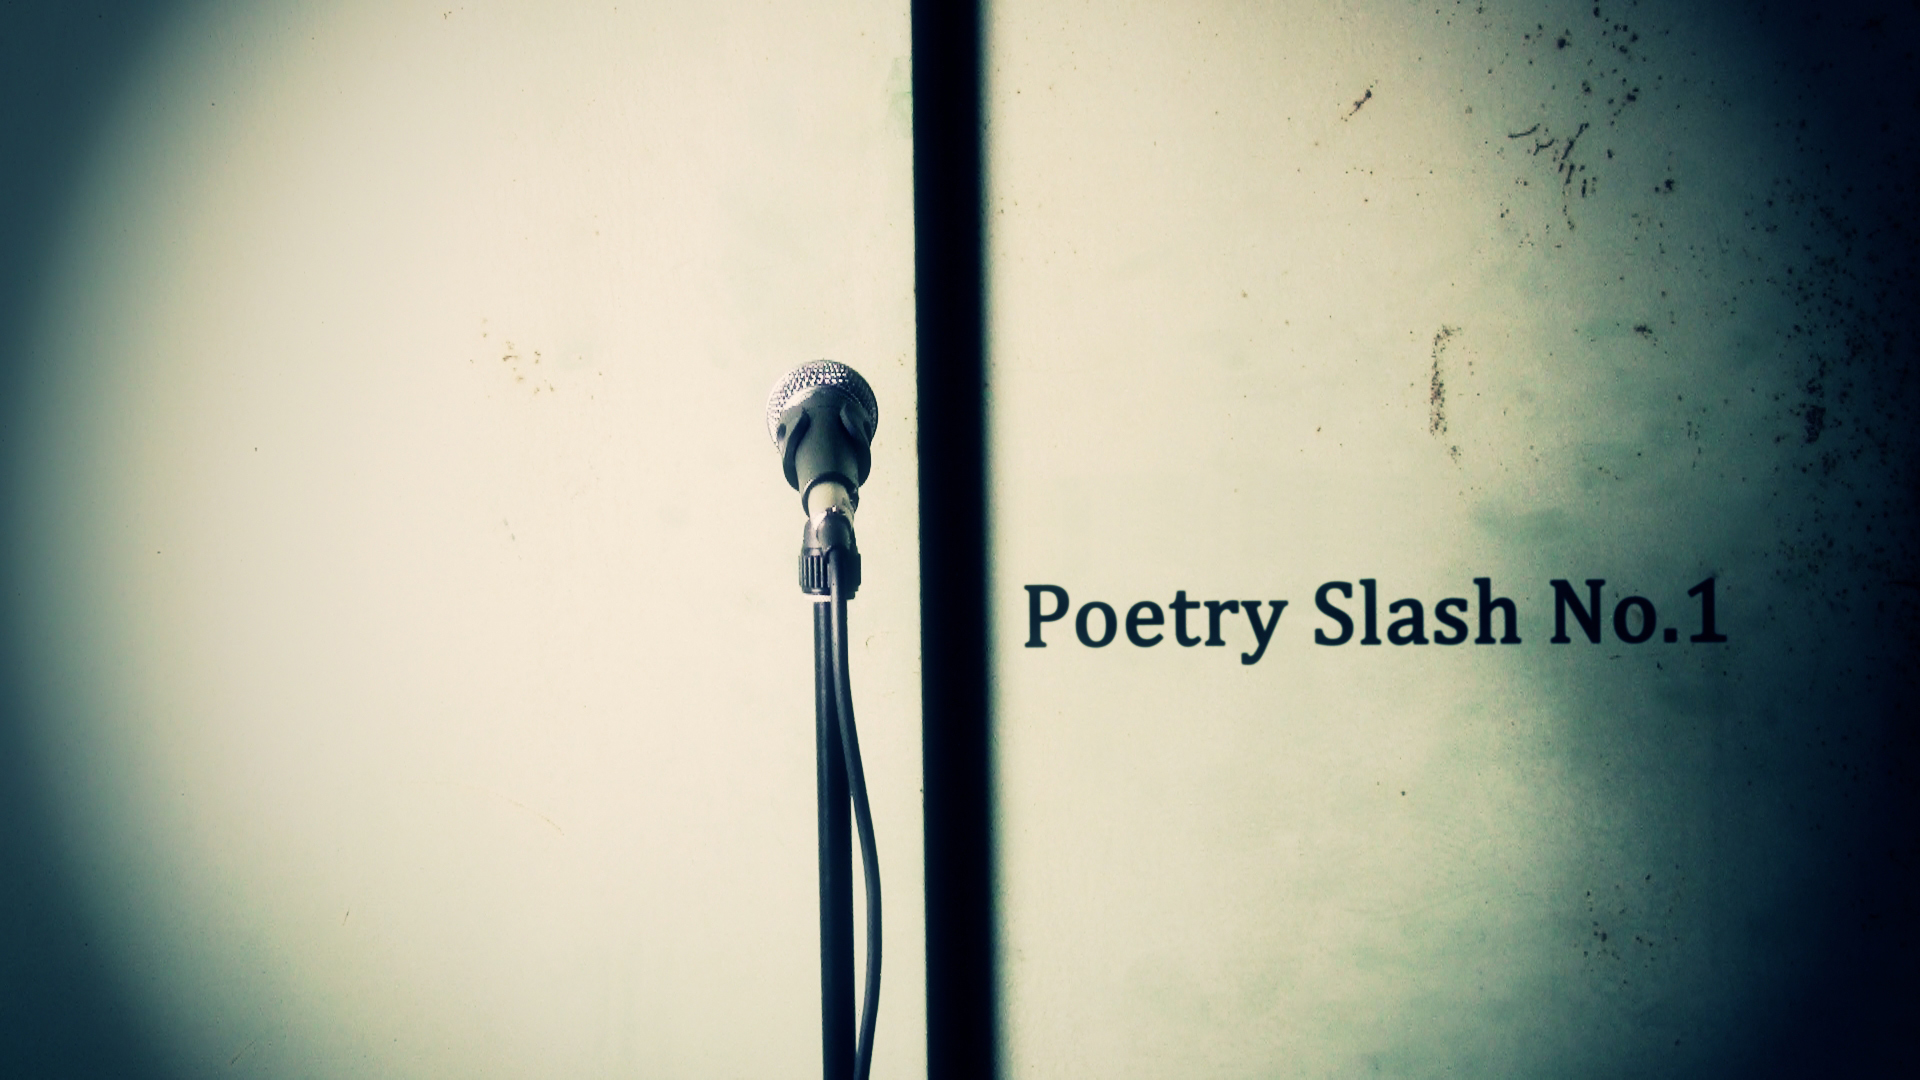 Poetry Slash No.1